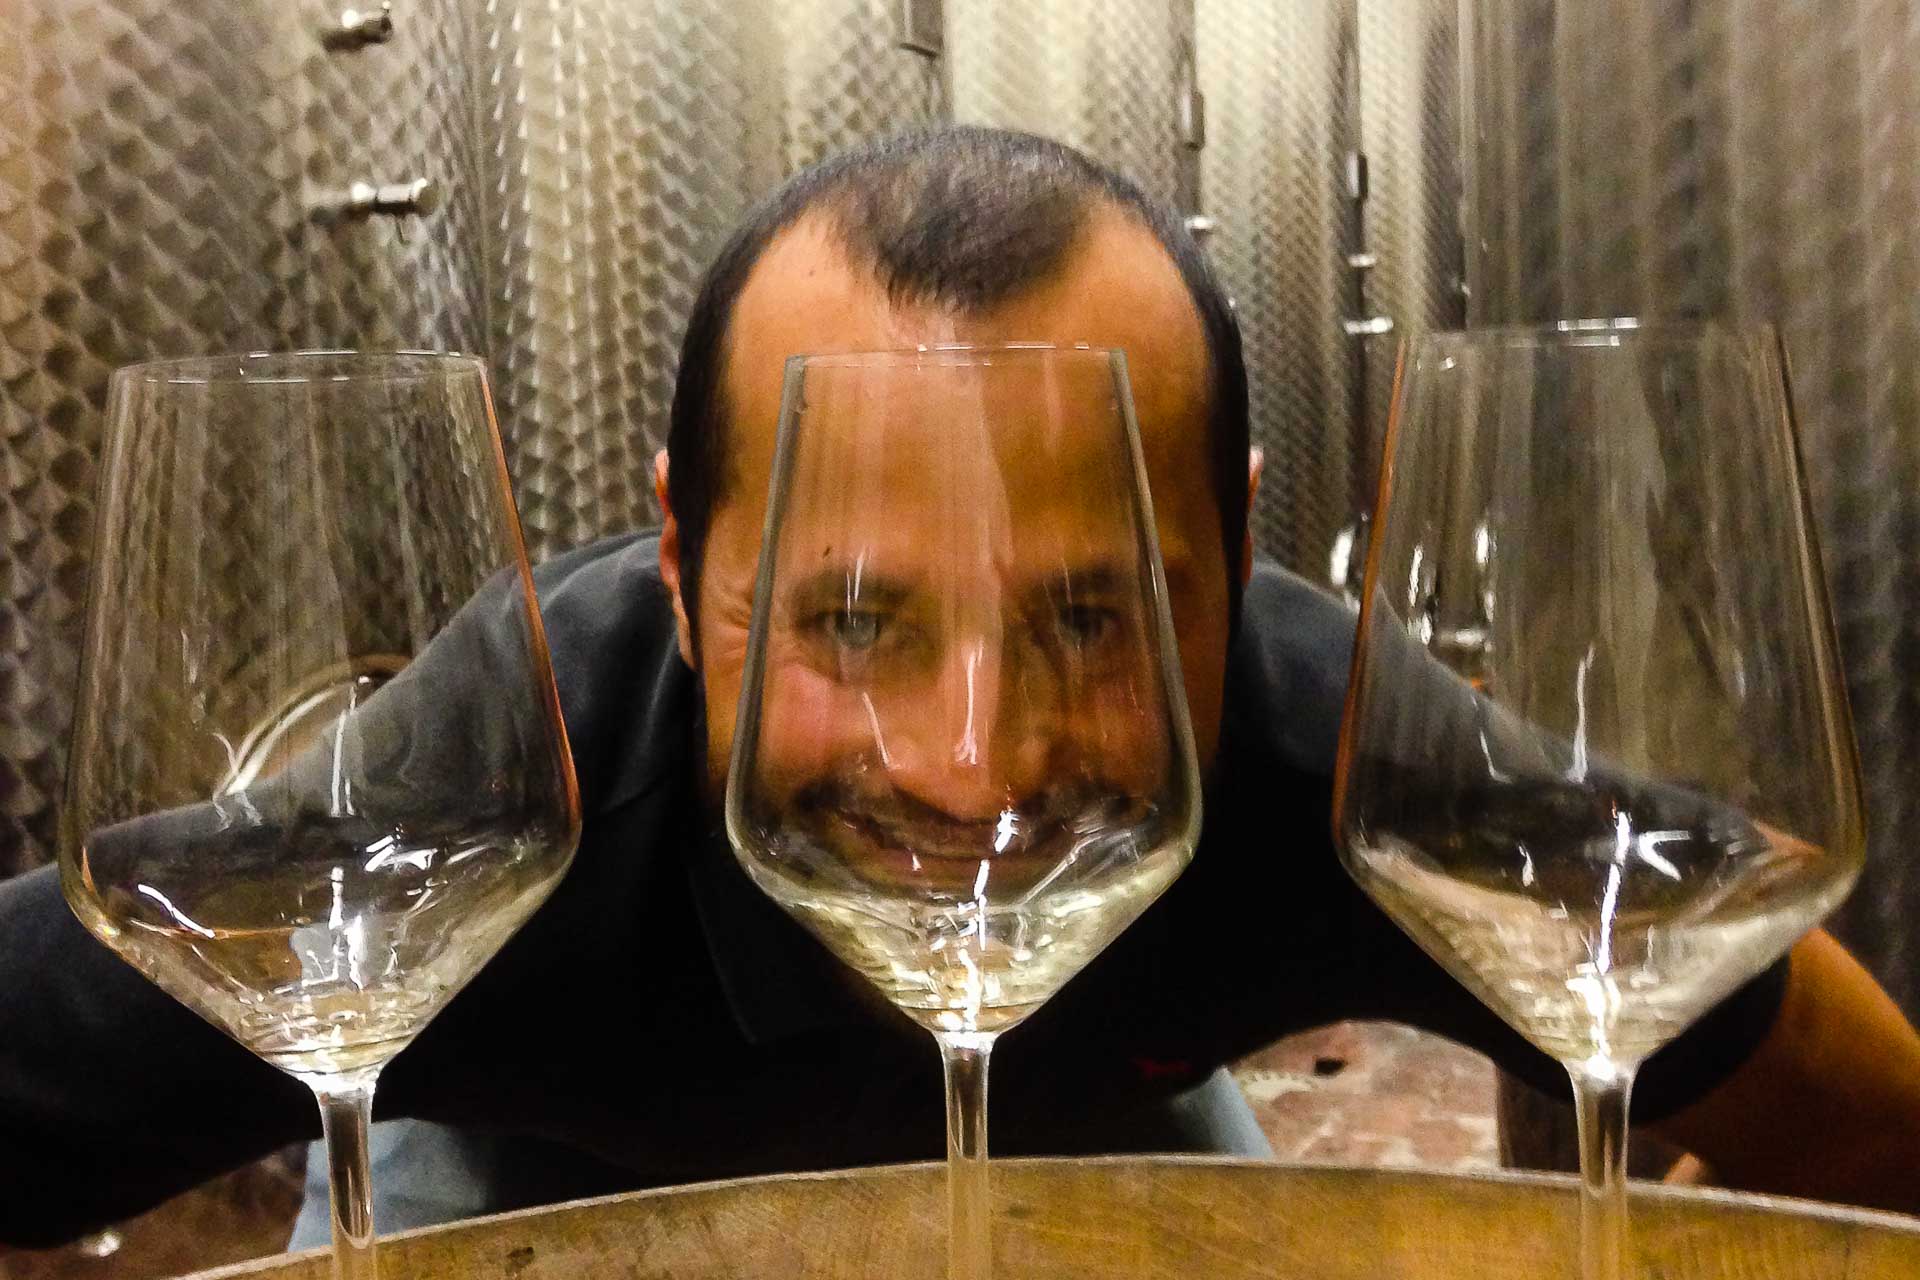 Tiago olhando atraves das taças de vinho em Brda na Eslovênia